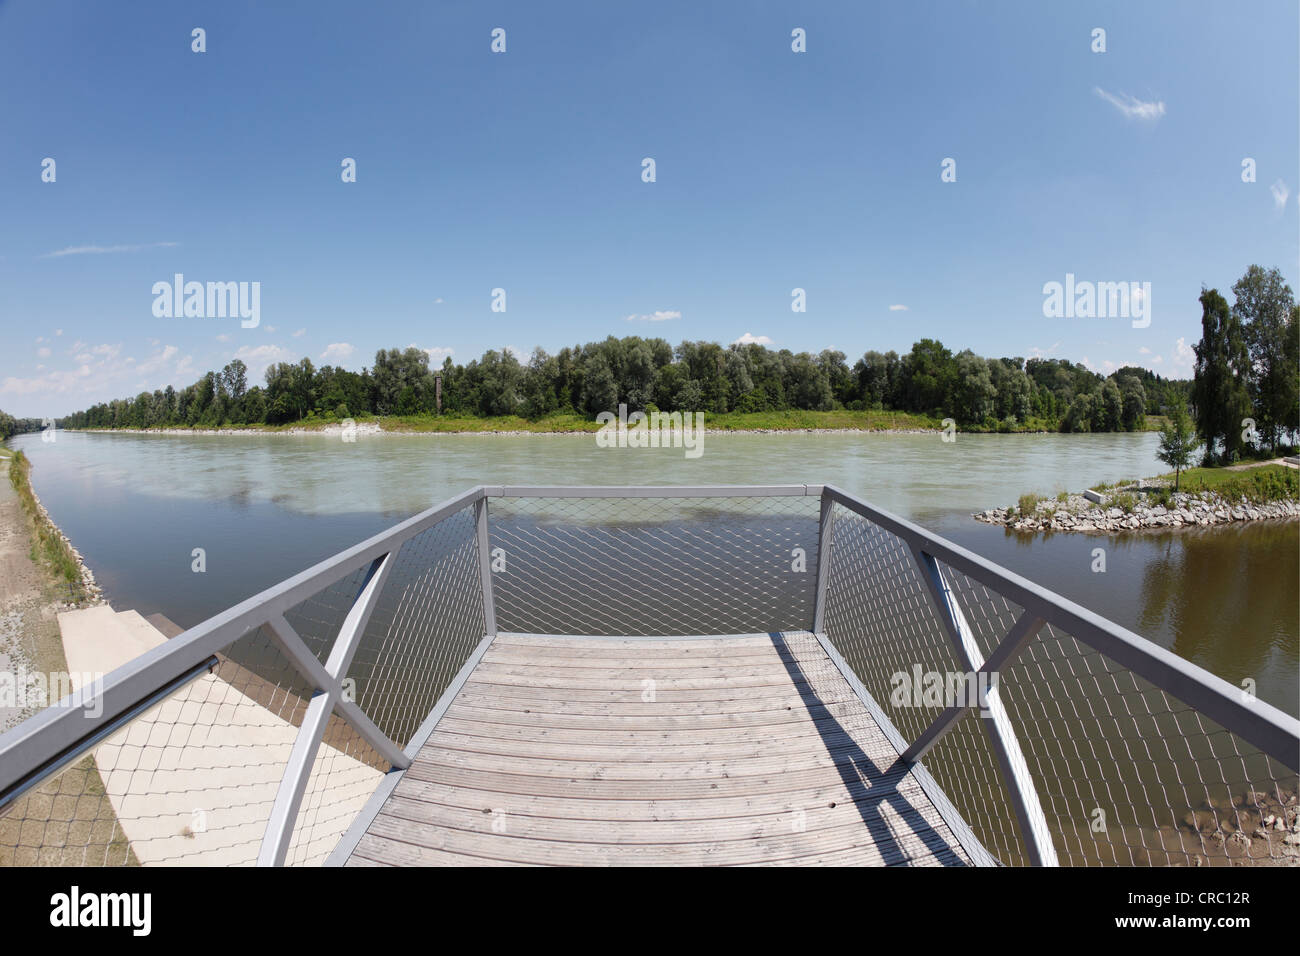 Plate-forme d'observation à fleuve Mangfall où elle rejoint la rivière Inn, Mangfallpark Nord, Rosenheim, Bavière Banque D'Images